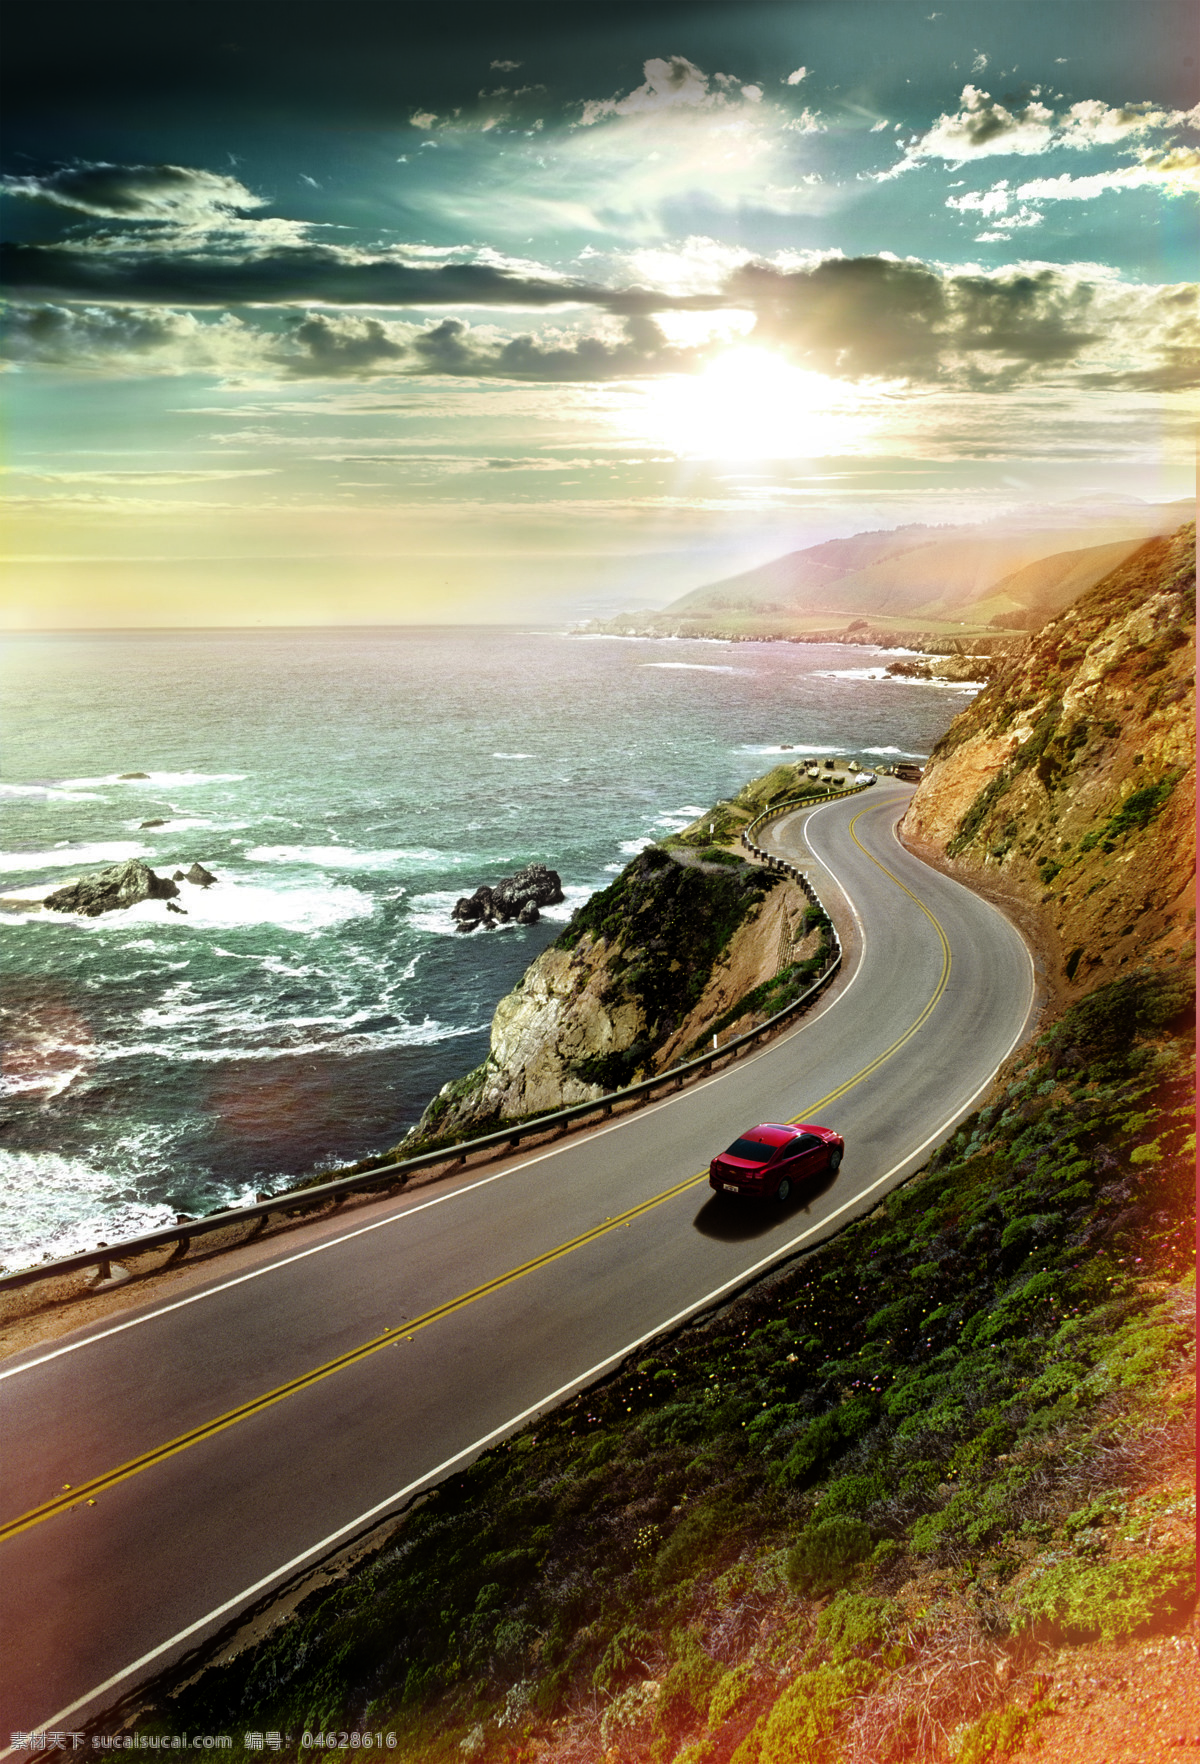 海岸公路图 汽车 公路 海岸 海浪 迈锐宝 大海 烈日 夕阳 云层 自然风景 自然景观